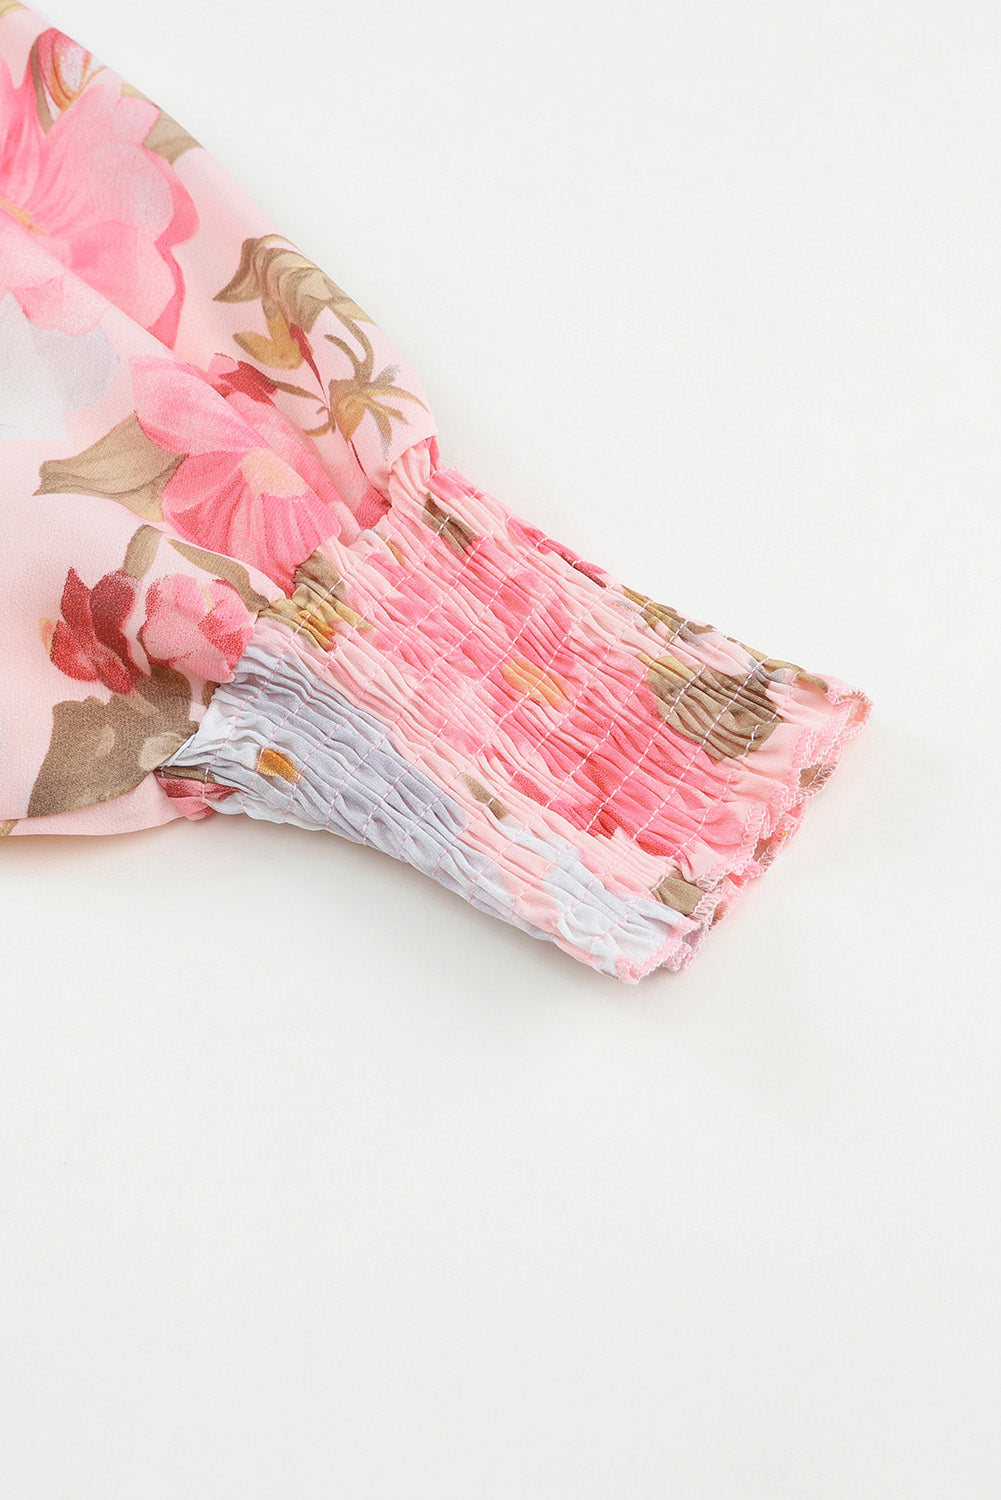 Camicetta floreale dal taglio ampio con maniche a 3/4 e polsini arricciati rosa